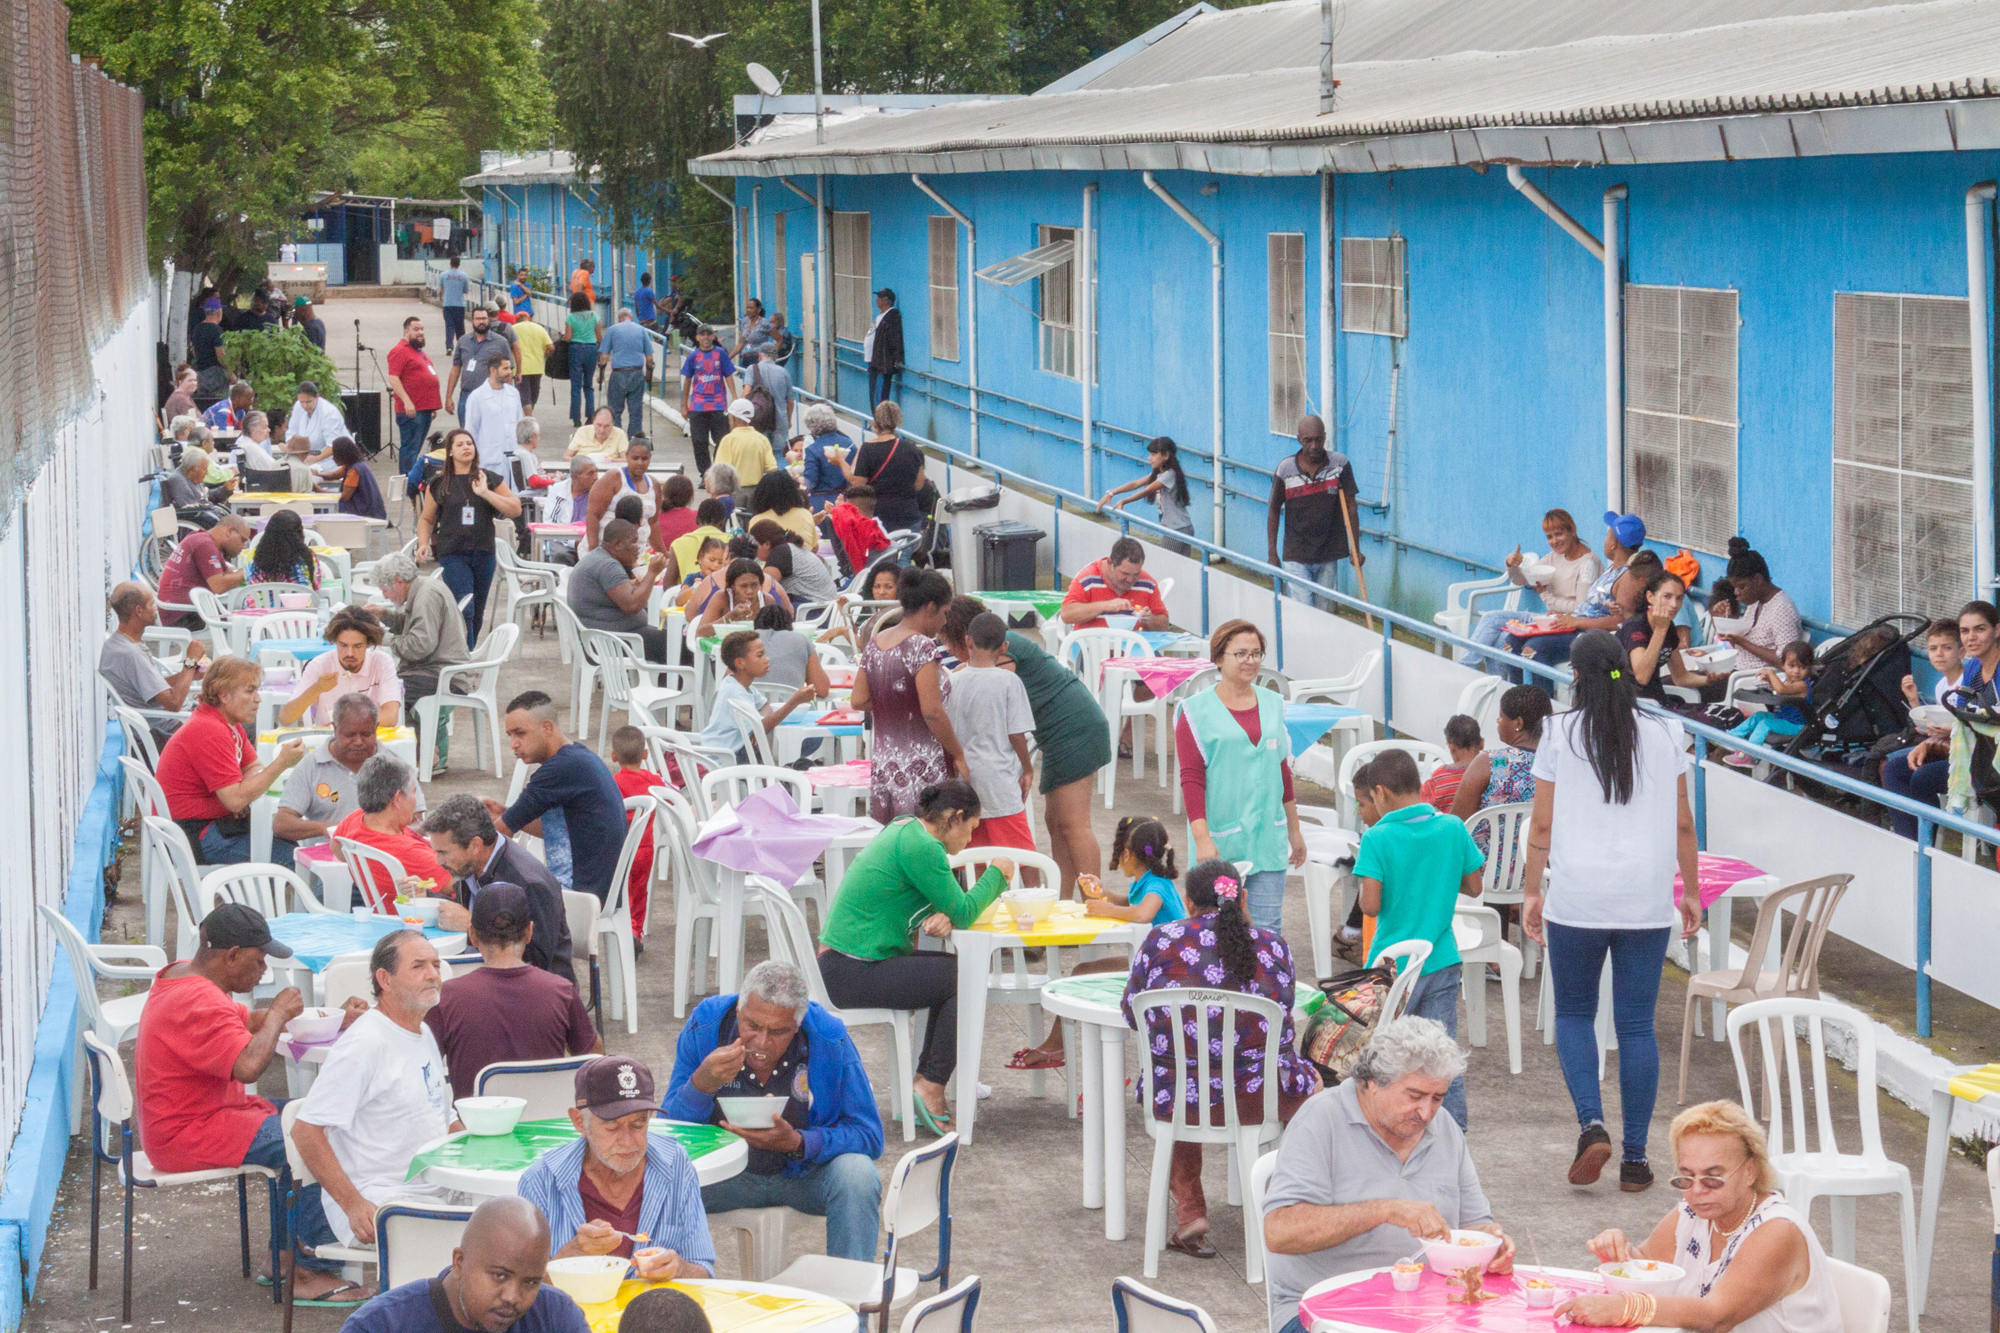 Dezenas de pessoas, entre homens e mulheres, estão sentadas realizando uma refeição ao ar livre.